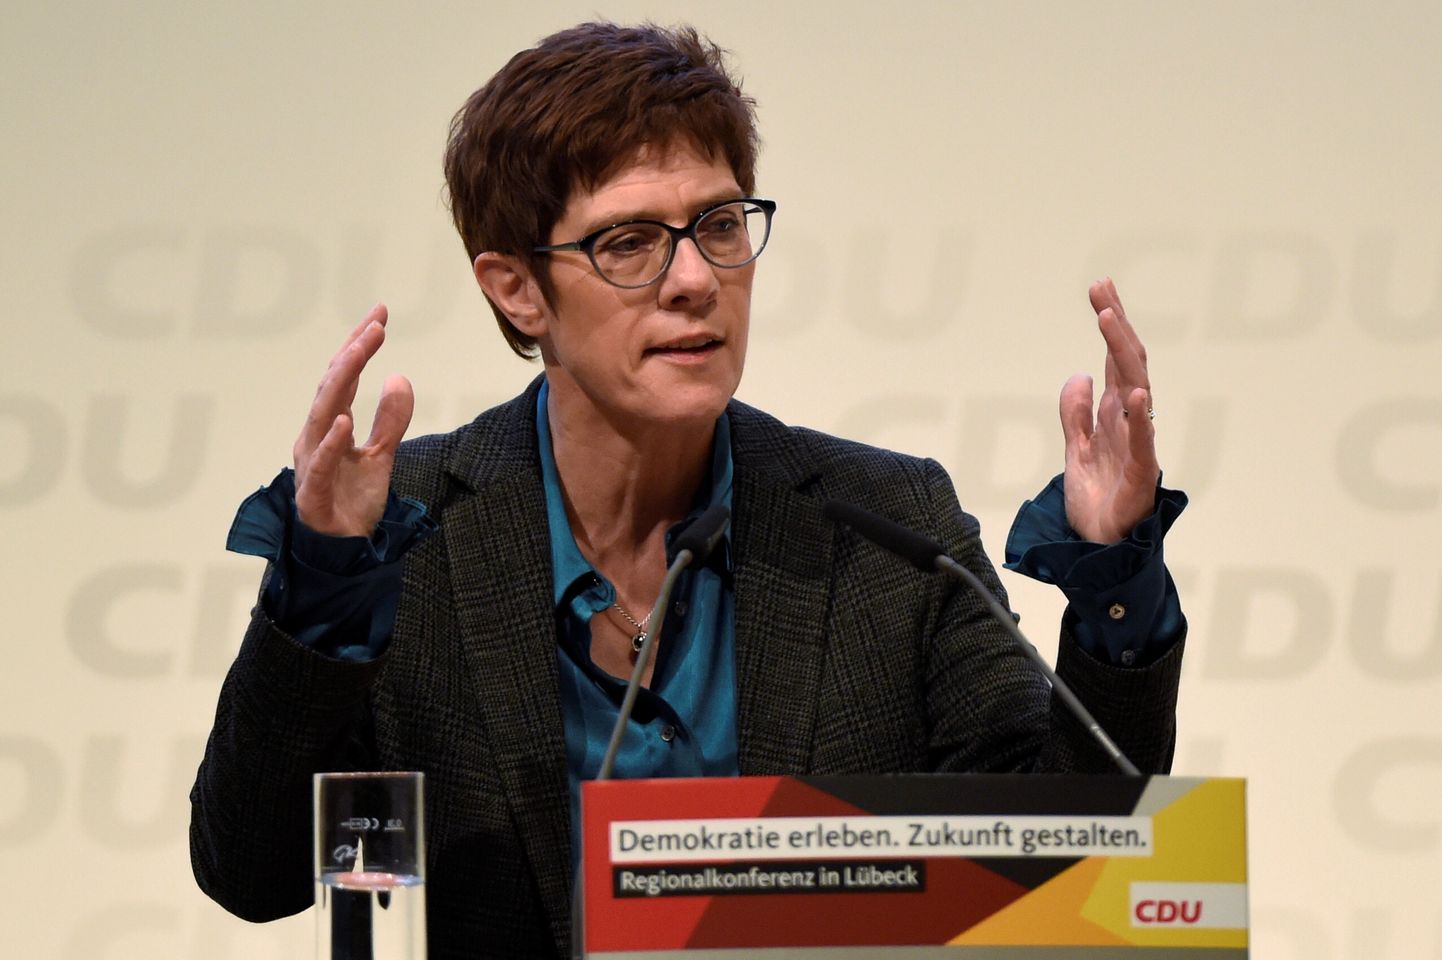 CDU esimeheks kandideeriv Annegret Kramp-Karrenbauer kõnelemas partei piirkondlikul konverentsil Lübeckis sel neljapäeval.